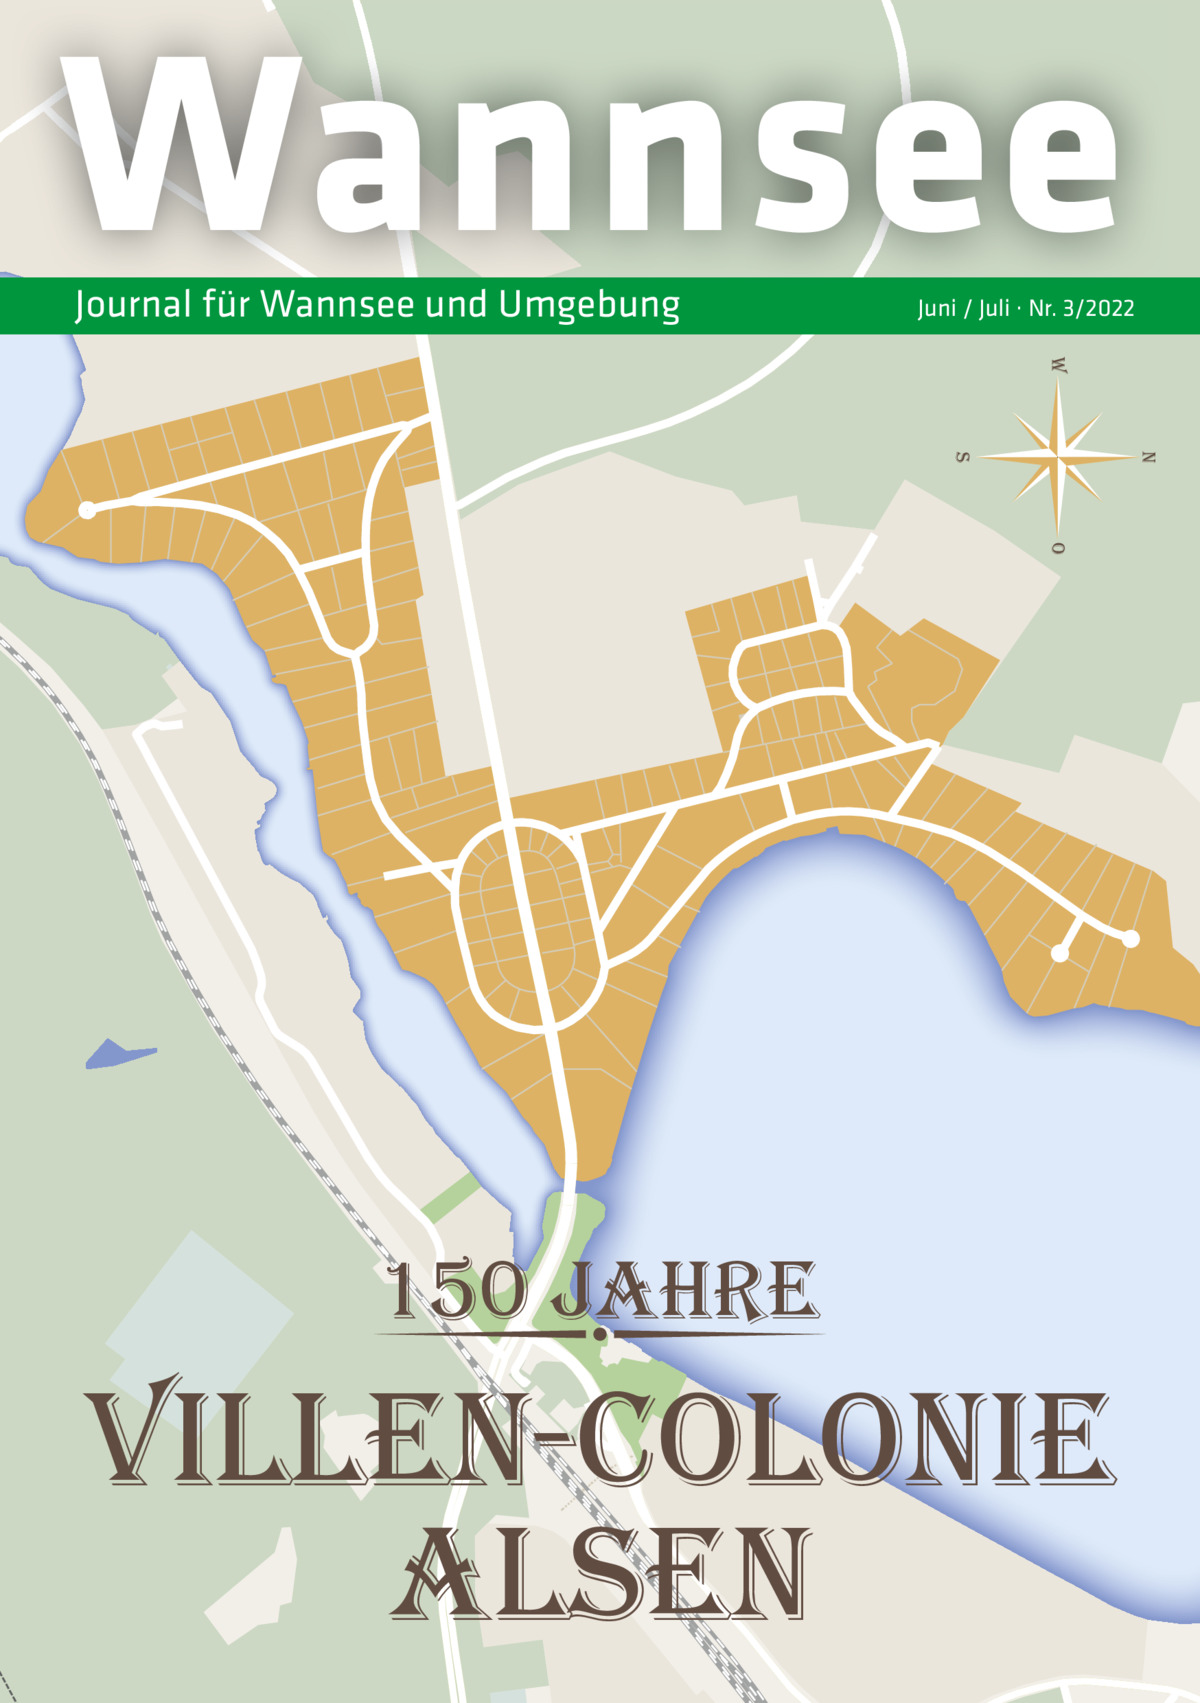 Wannsee Journal für Wannsee und Umgebung  Juni / Juli · Nr. 3/2022 w n  s o  150 jahre  villen-colonie alsen